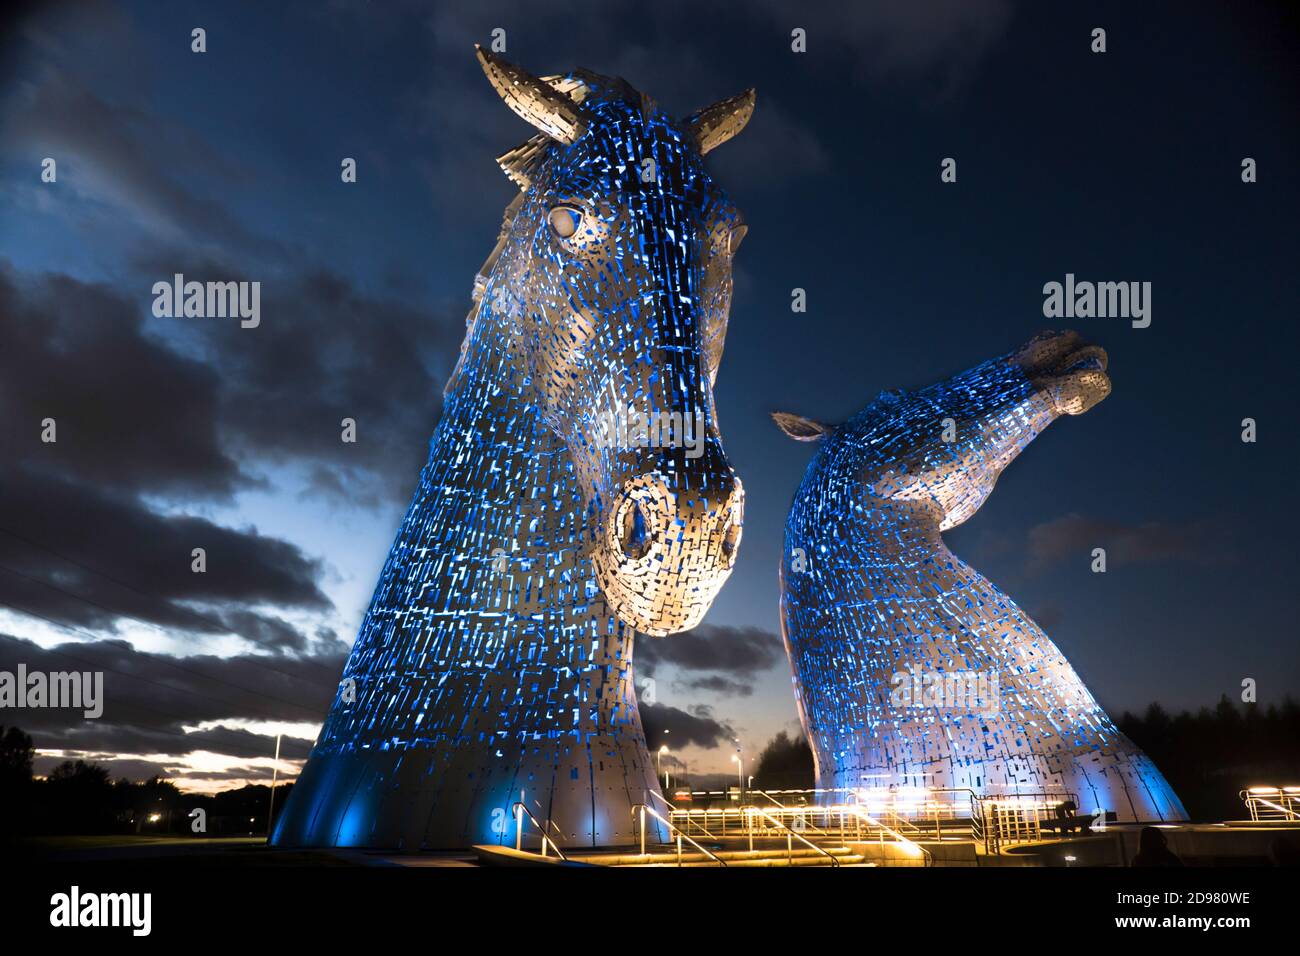 Die wunderschöne Kelpies-Kunstinstallation erleuchtete nachts. Falkirk Schottland. Erstellt vom Glasgow-Künstler Andy Scott Stockfoto